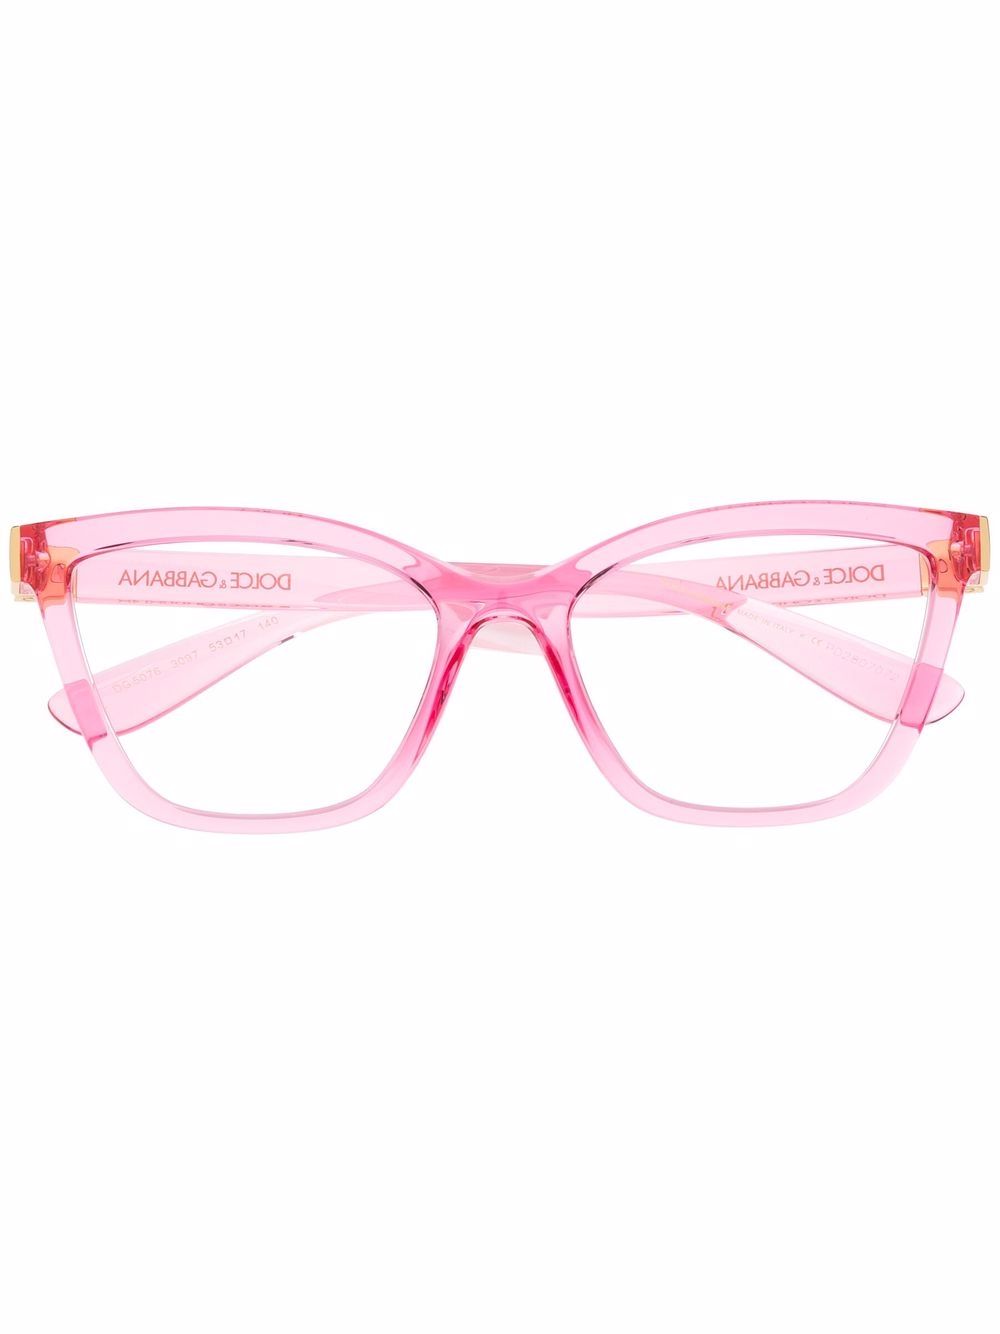 фото Dolce & gabbana eyewear очки в прозрачной квадратной оправе